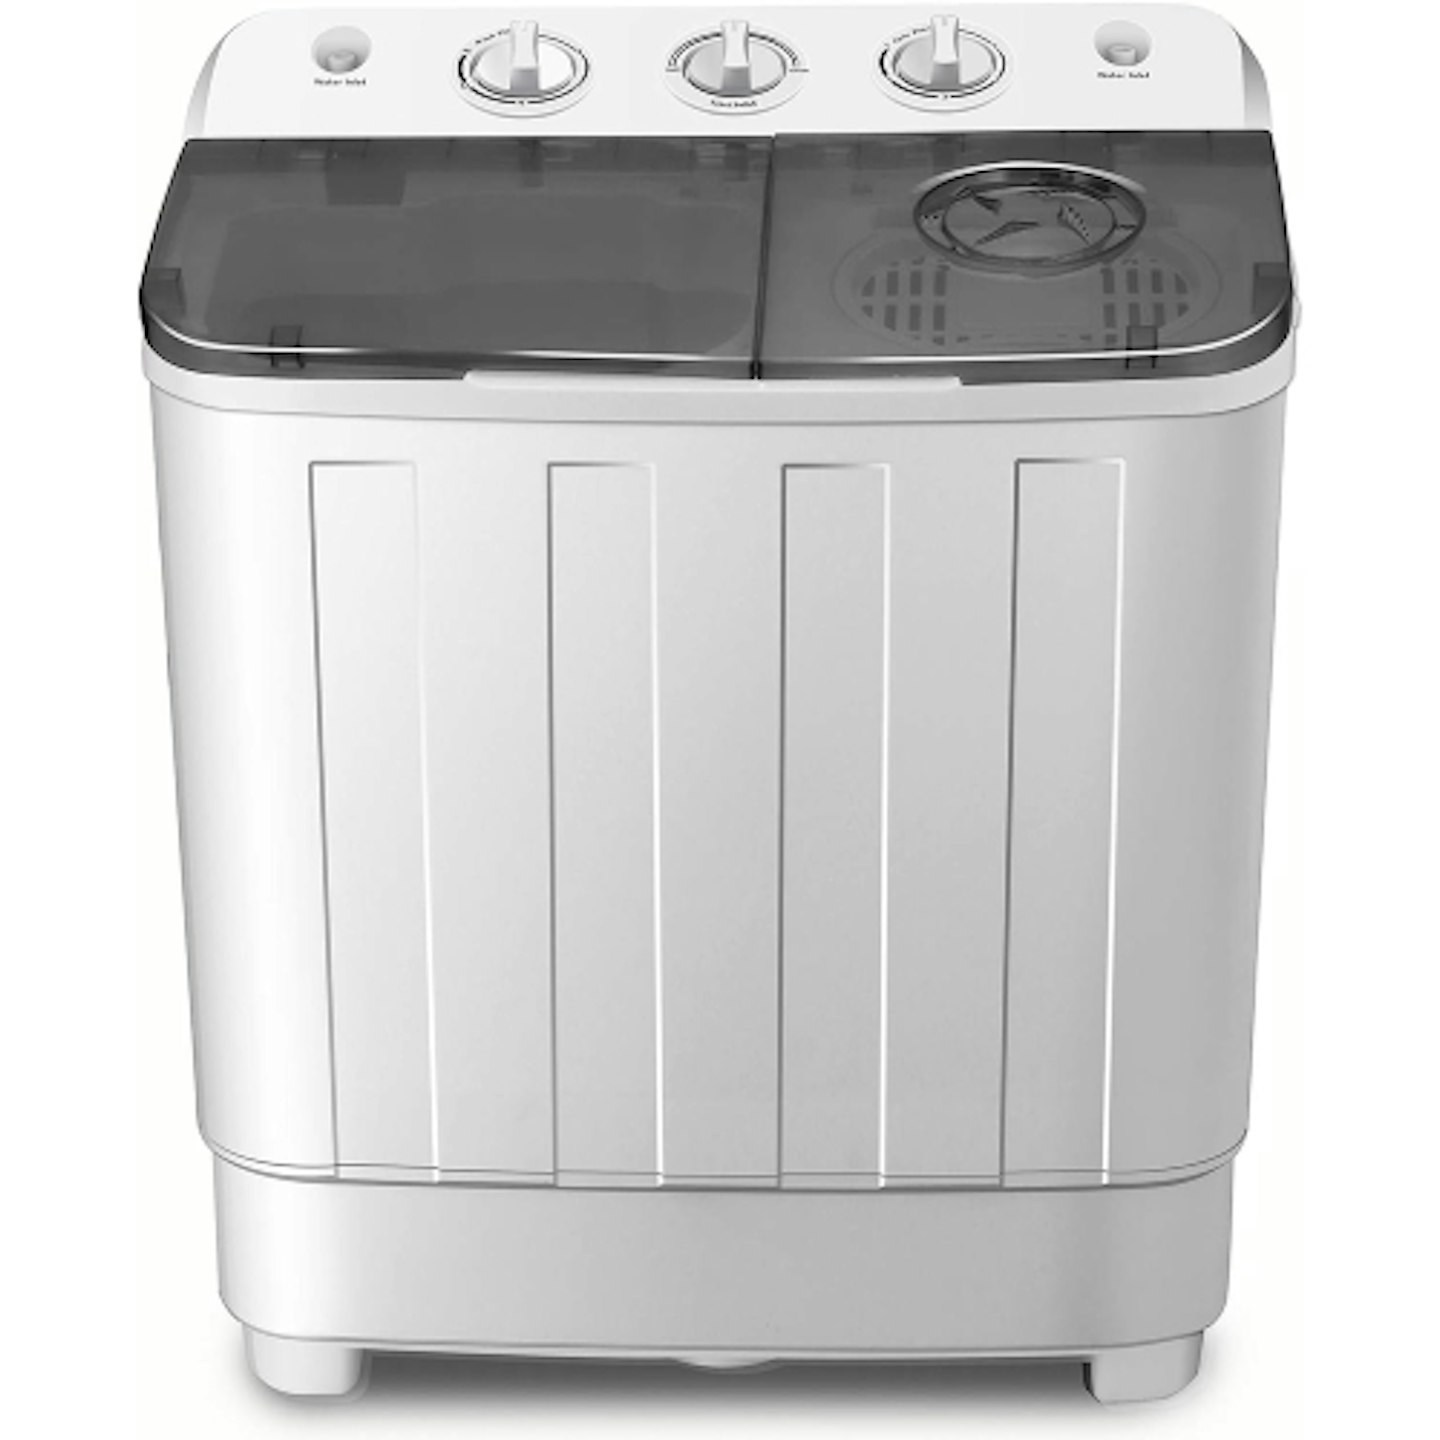 FitnessClub large portable washing machine